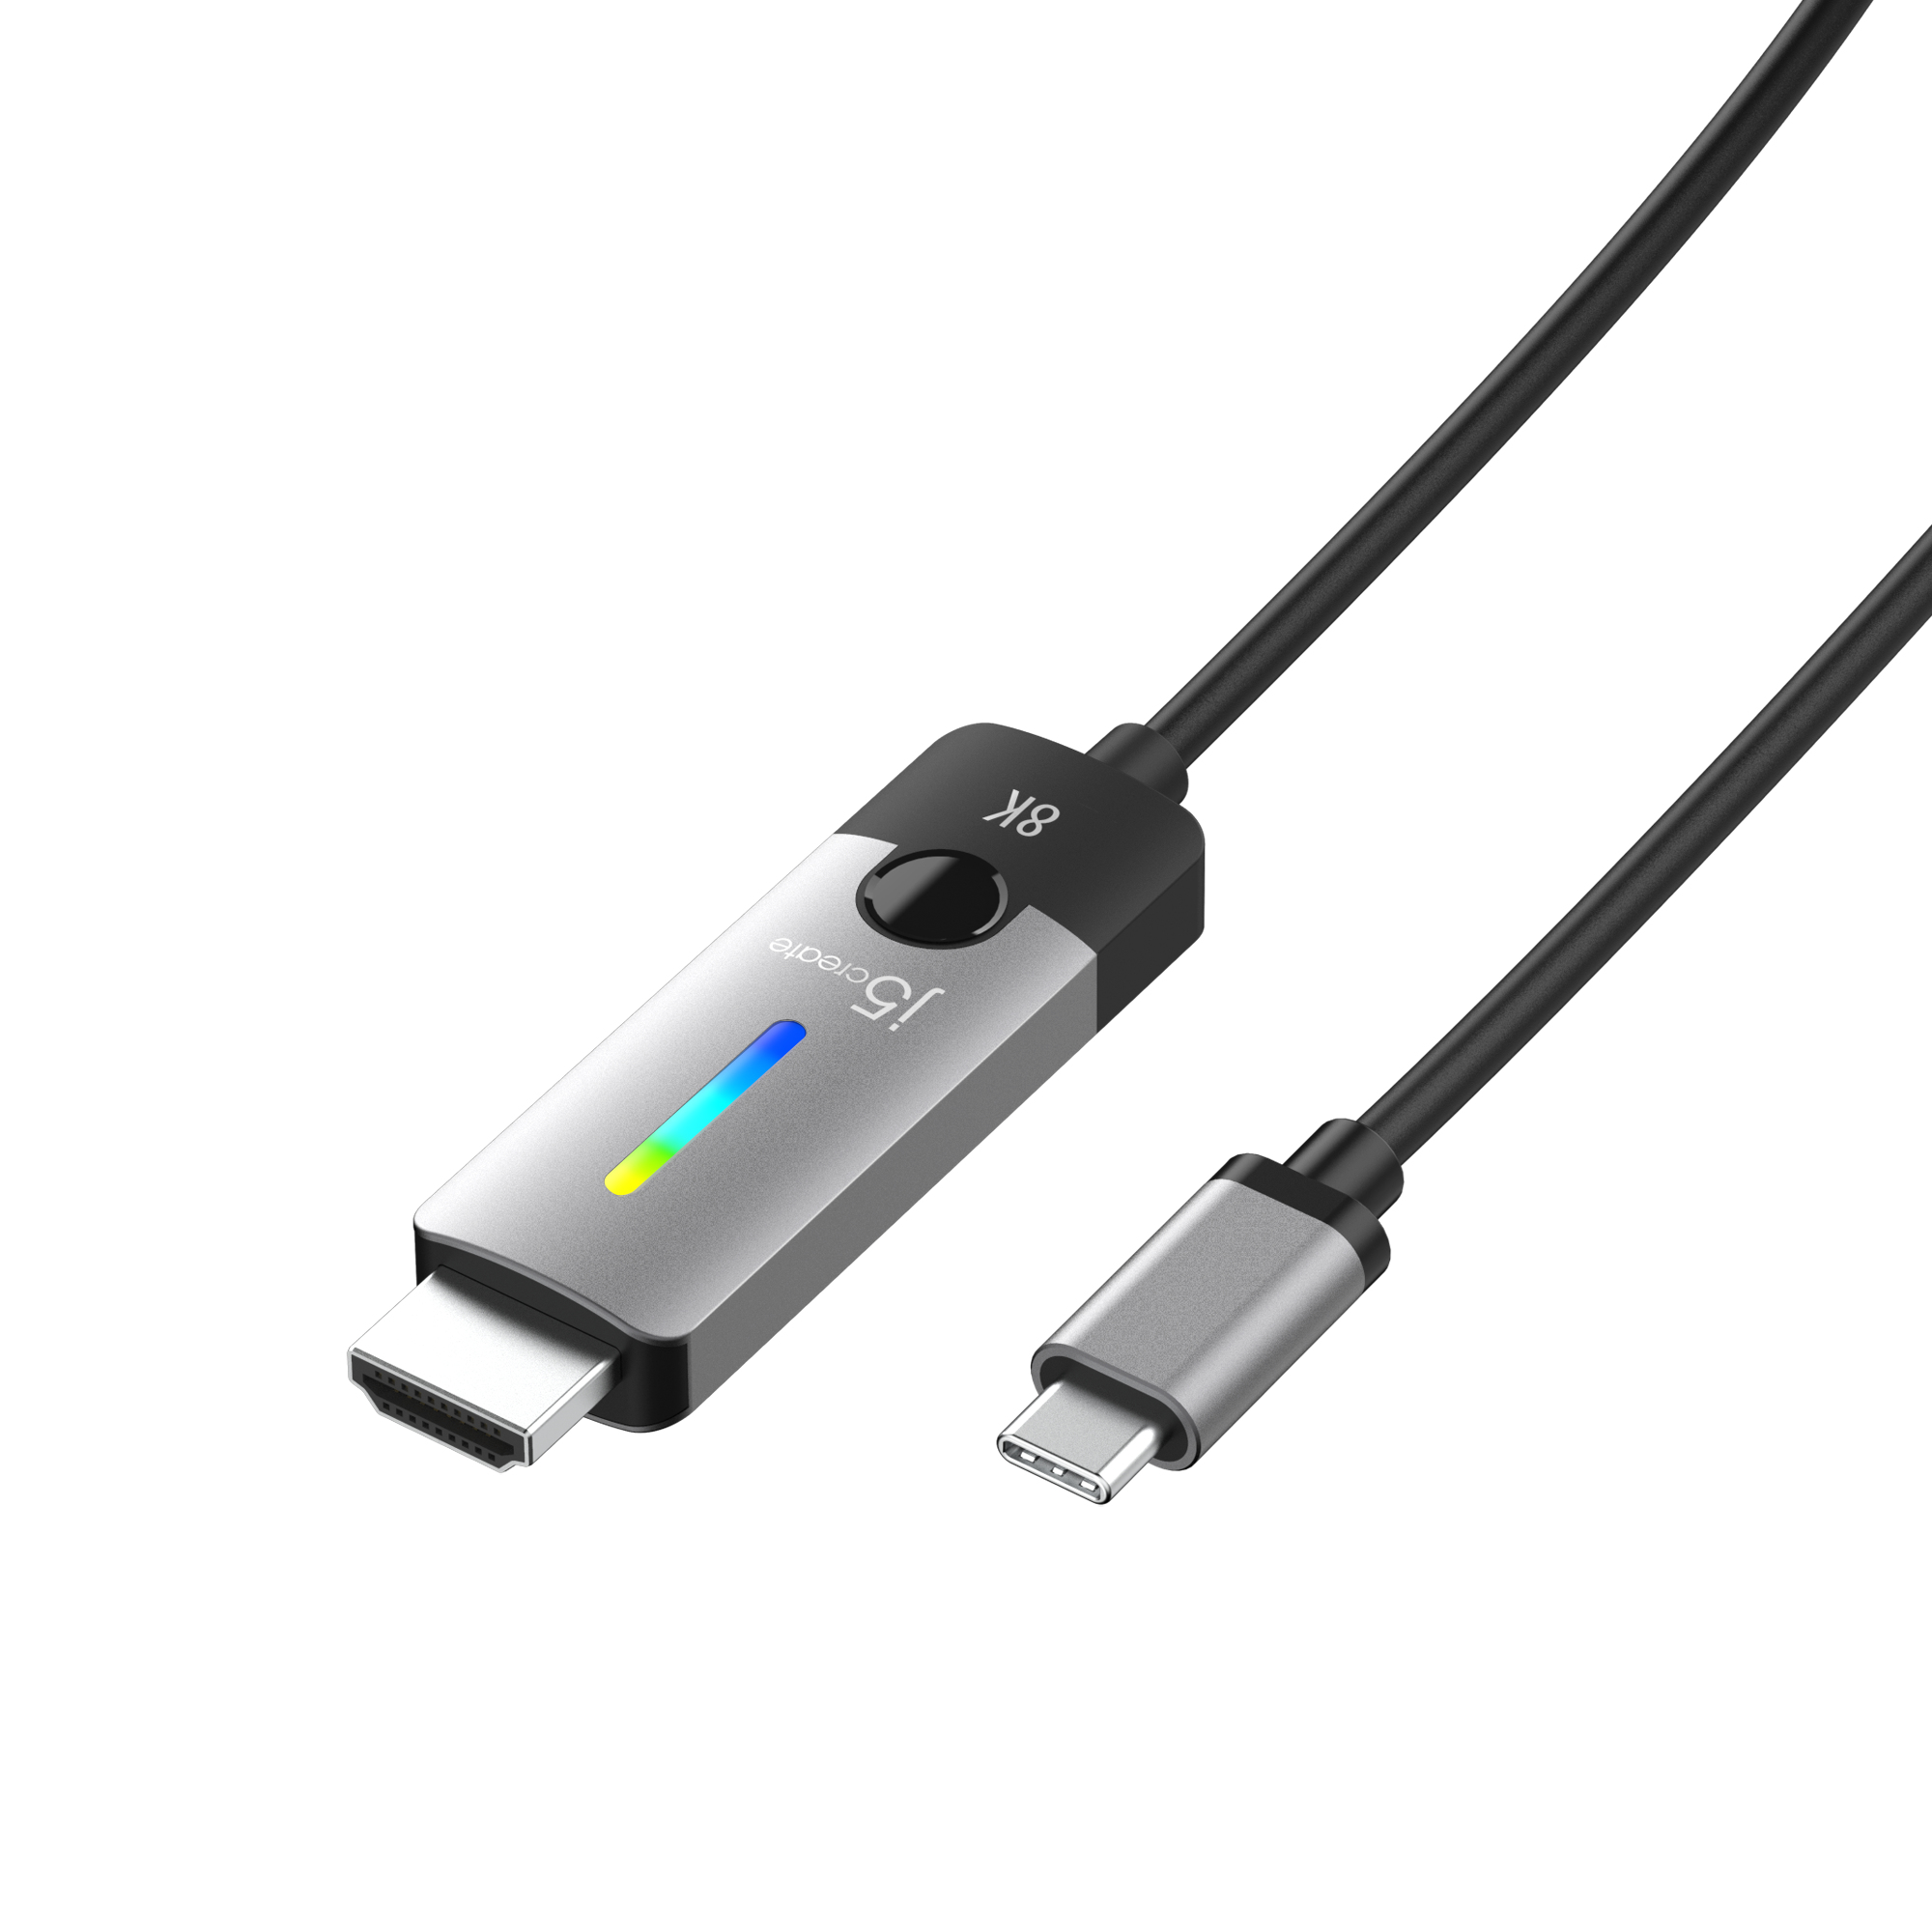 j5create JCC157 - Adapterkabel - 24 pin USB-C männlich zu HDMI männlich - 1.8 m - abgeschirmt - Weltraum grau/schwarz - unterstützt 4K 144 Hz (3840 x 2160)